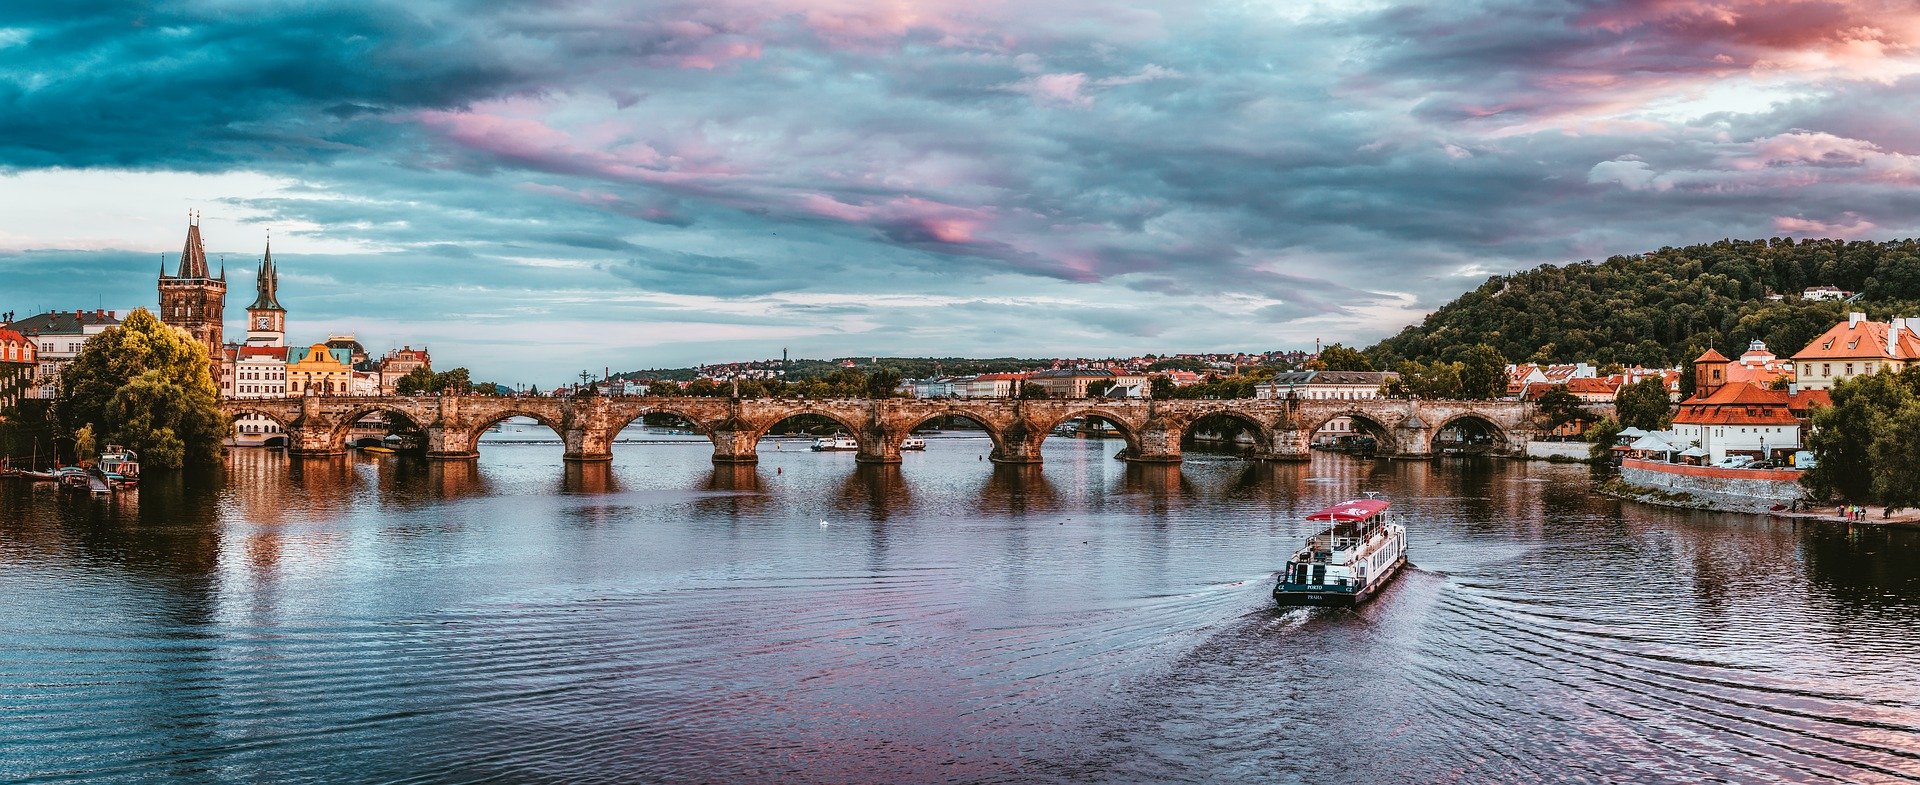 Ofertas de Viajes a Praga: Mejores lugares para visitar en Praga